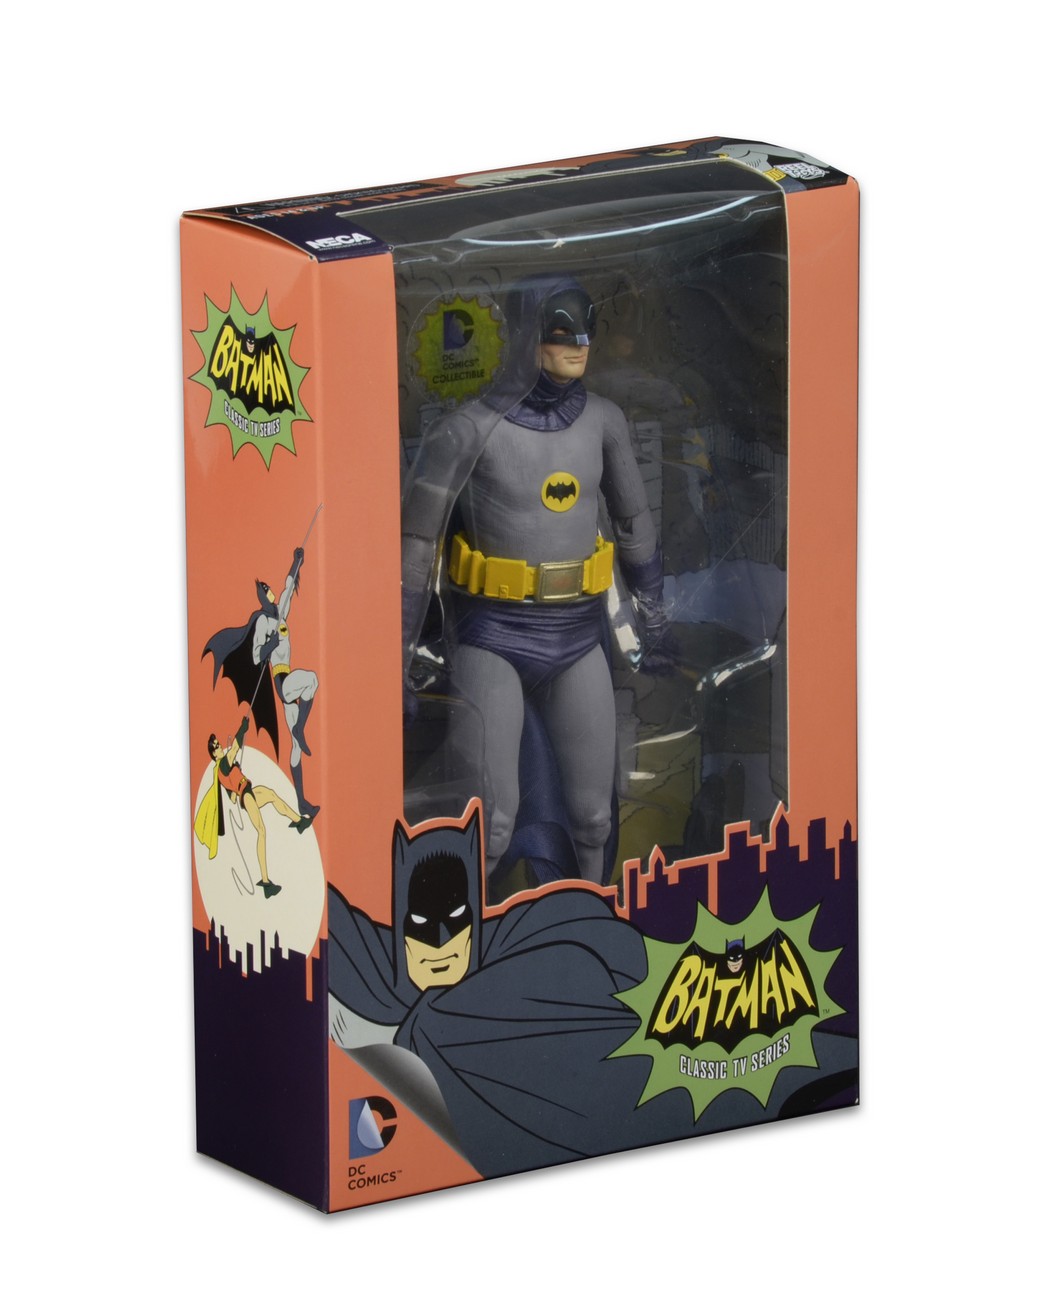 Details about   NECA DC Comics Batman Superman Joker PVC Action Figure Collectible Toy 7" US 